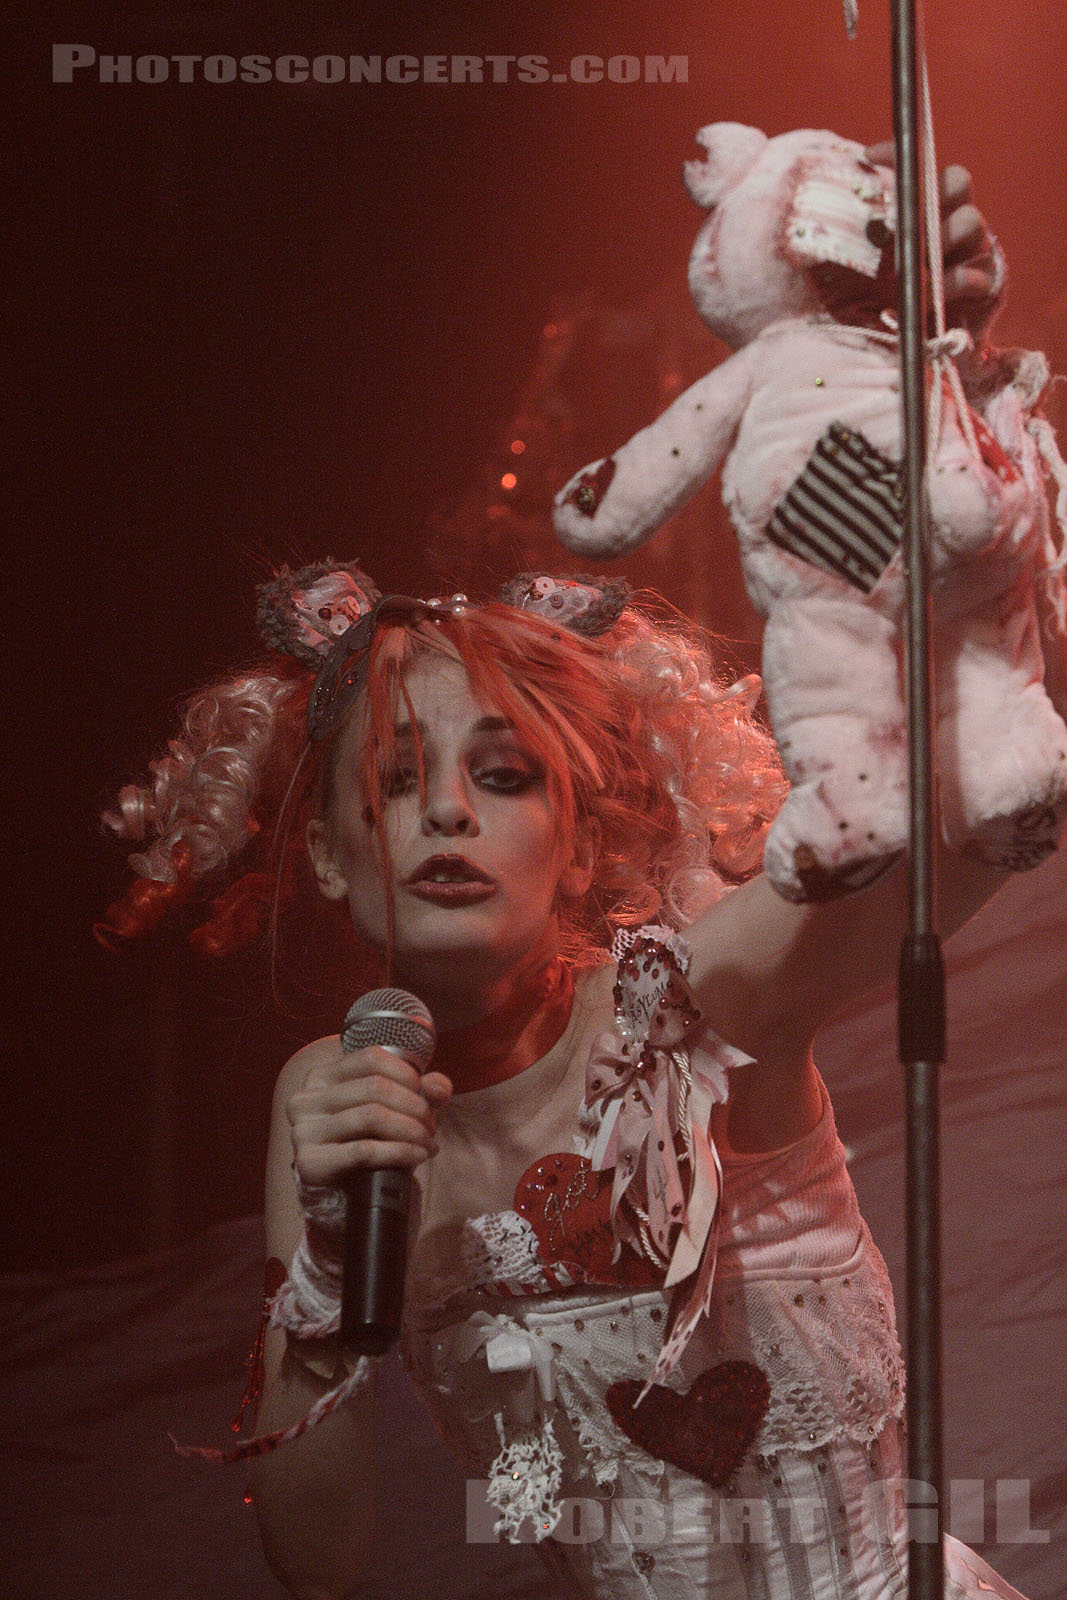 Photo Emilie Autumn La Locomotive Paris 08 04 15 Robert Gil Photosconcerts Com Photographe De Concerts